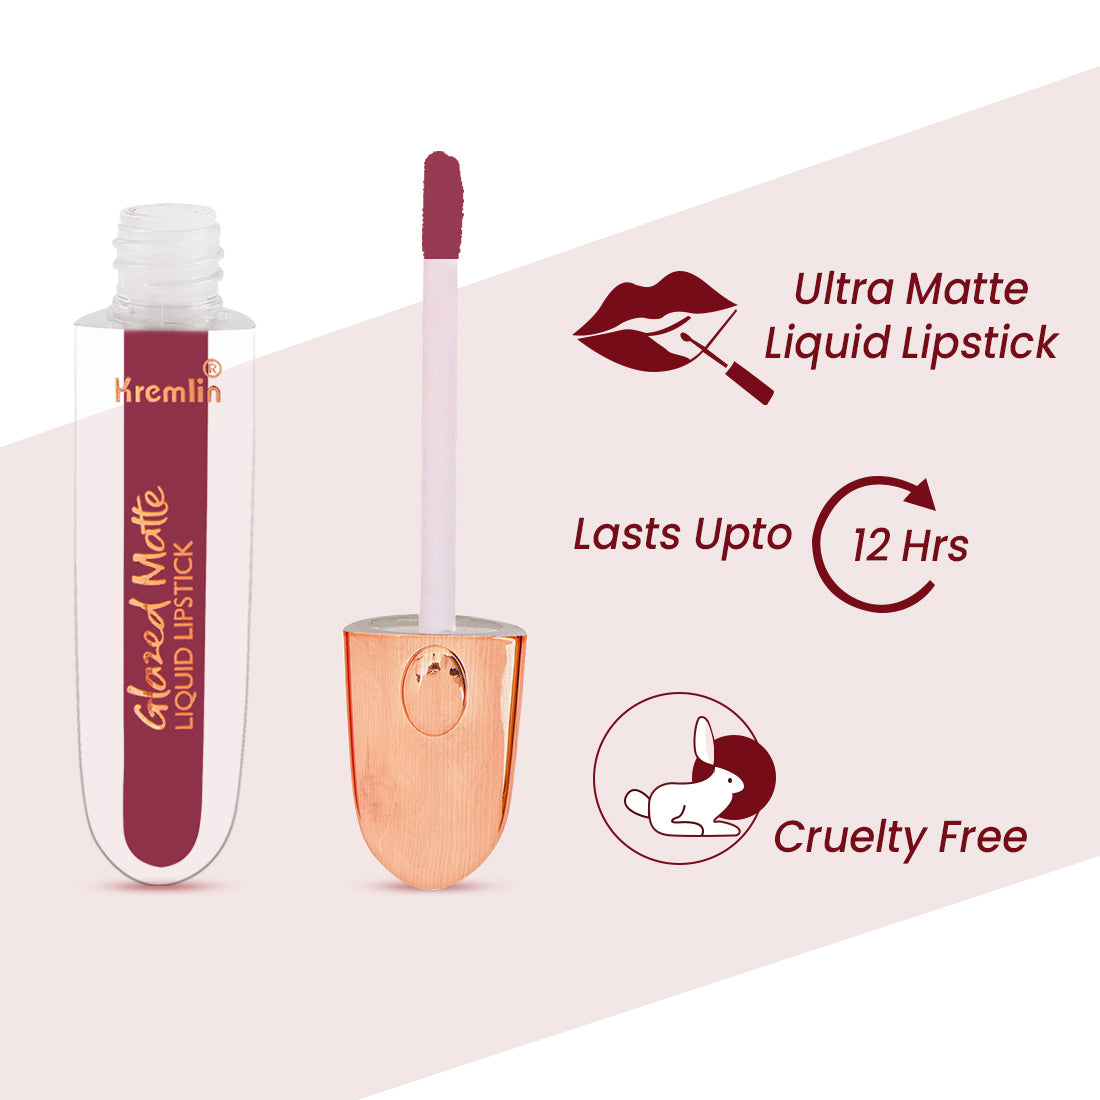 Kremlin Glazed Matte Liquid Lipstick Lips Pack of 2 (Barbie, Virgin)